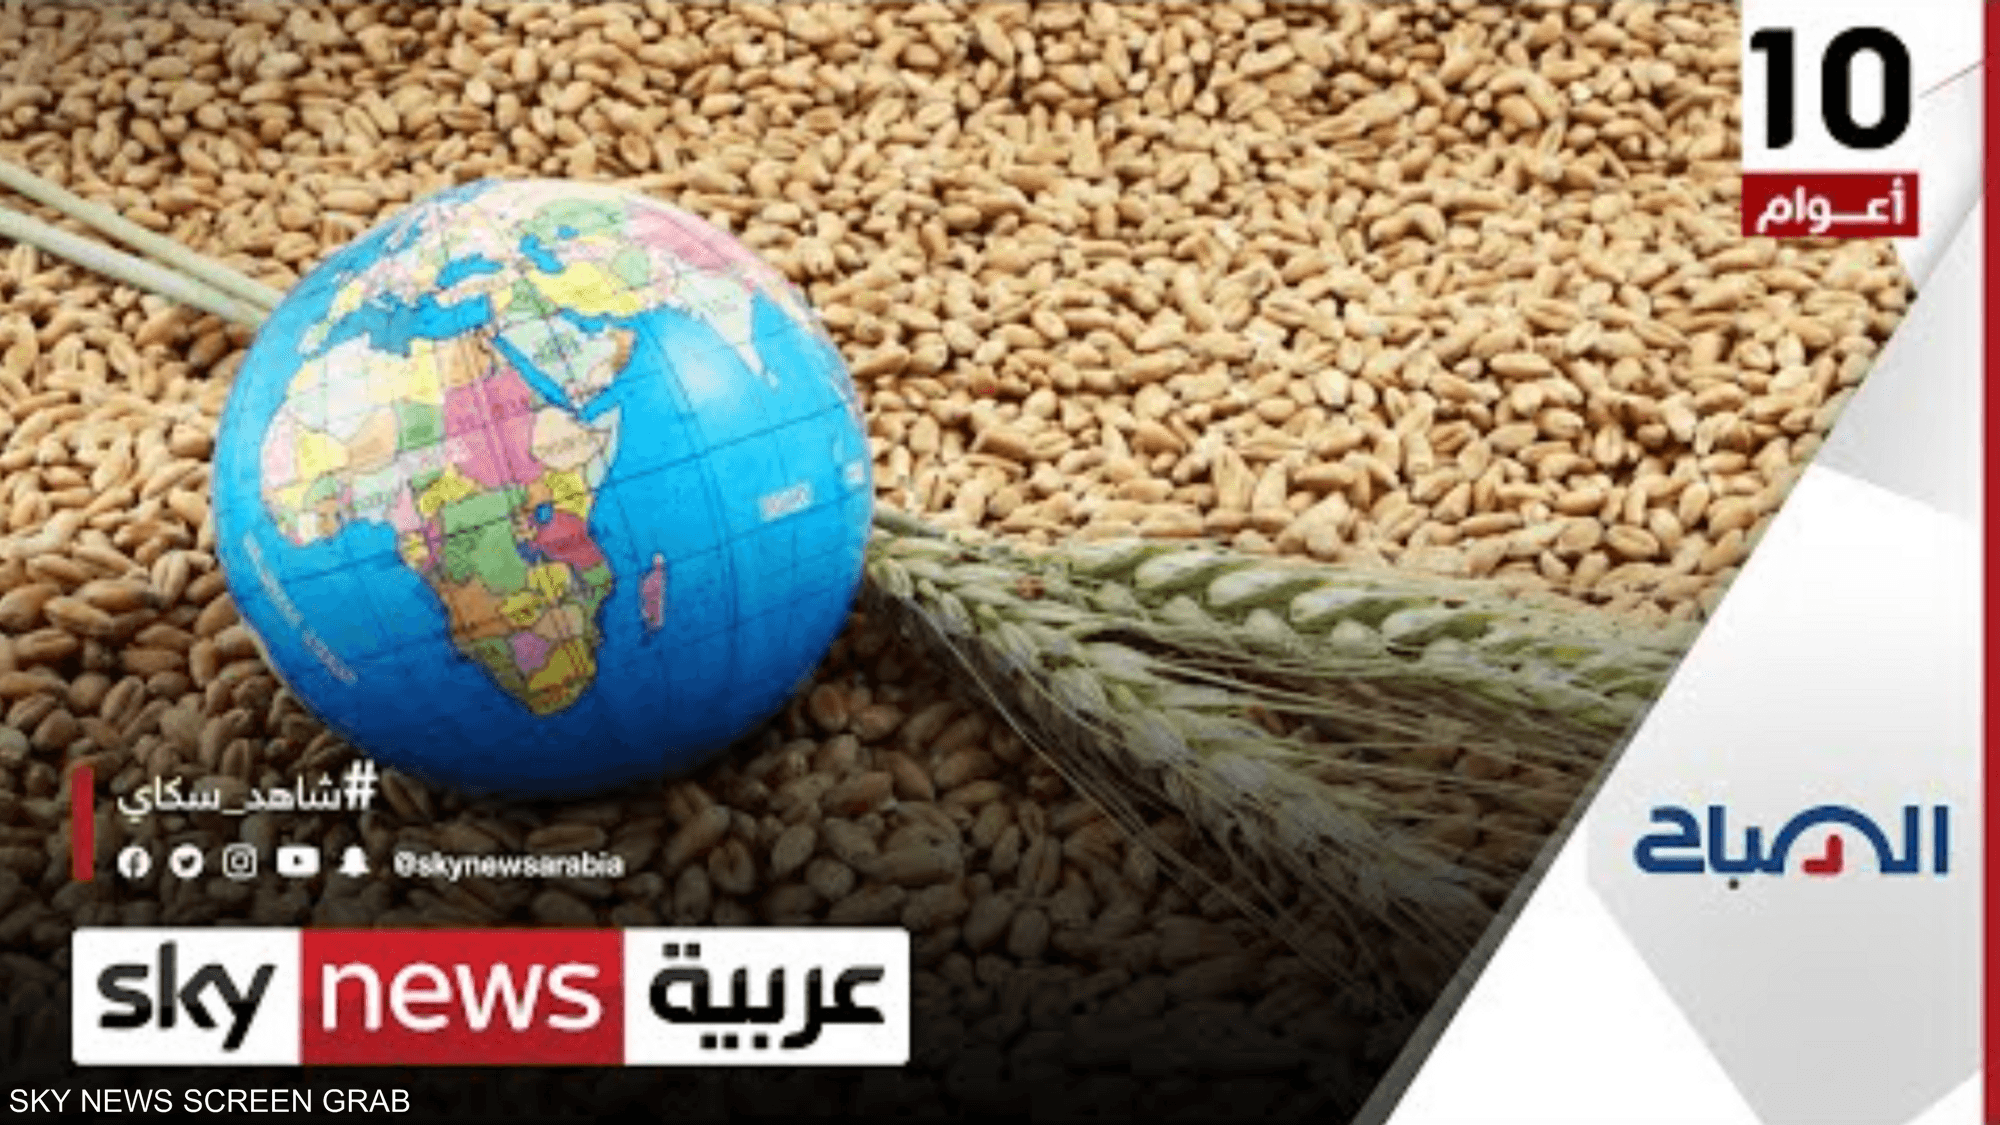 قرار الهند حظر تصدير القمح يعقد أزمة الغذاء العالمية